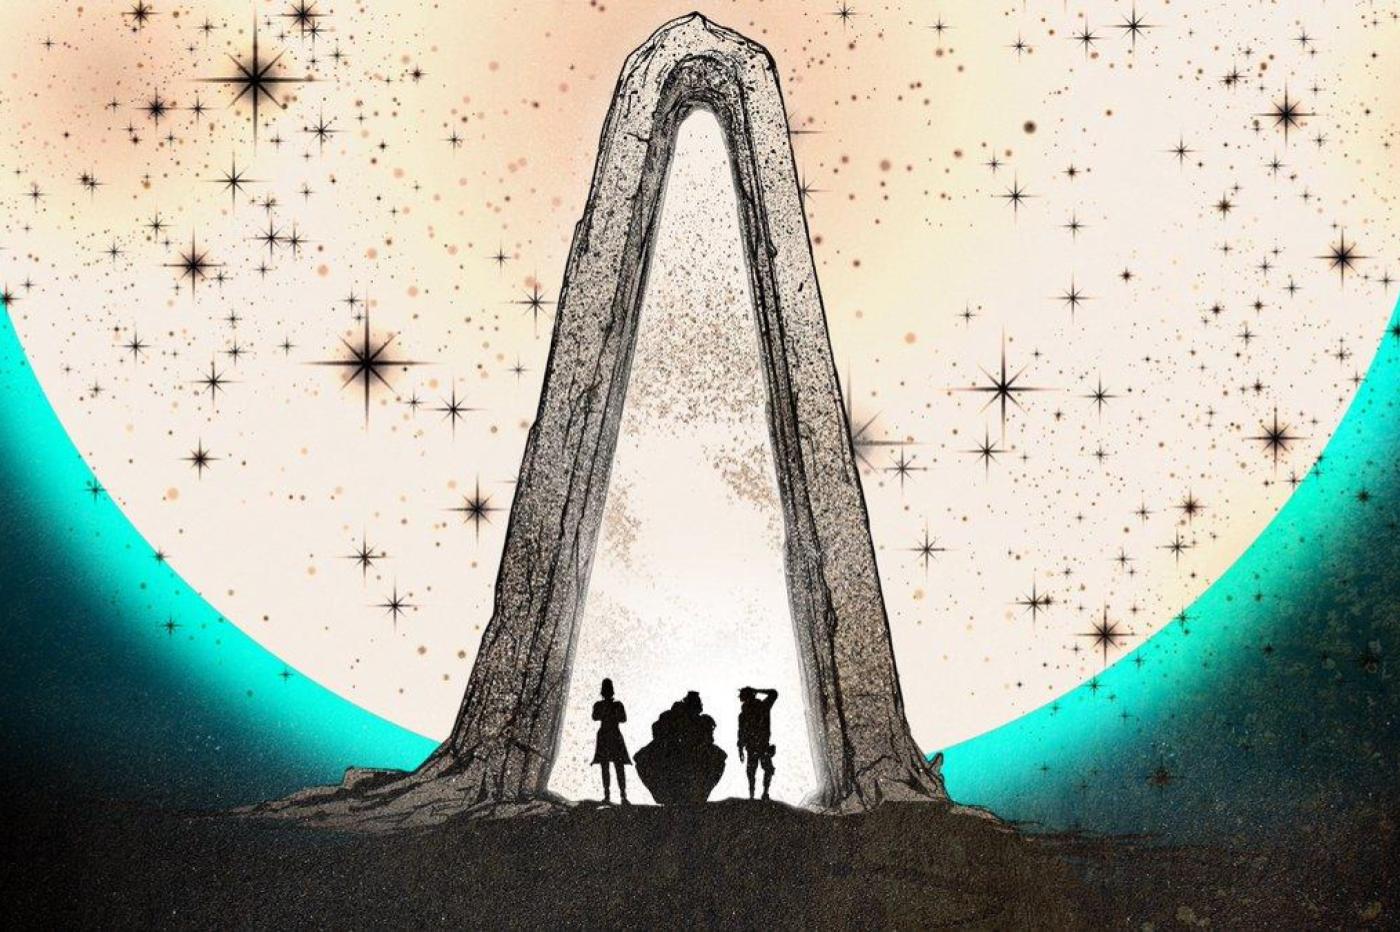 Première image dévoilée de la suite de Tales From the Borderlands montrant l'ombre d'une arche et de 3 nouveau personnages devant une lune